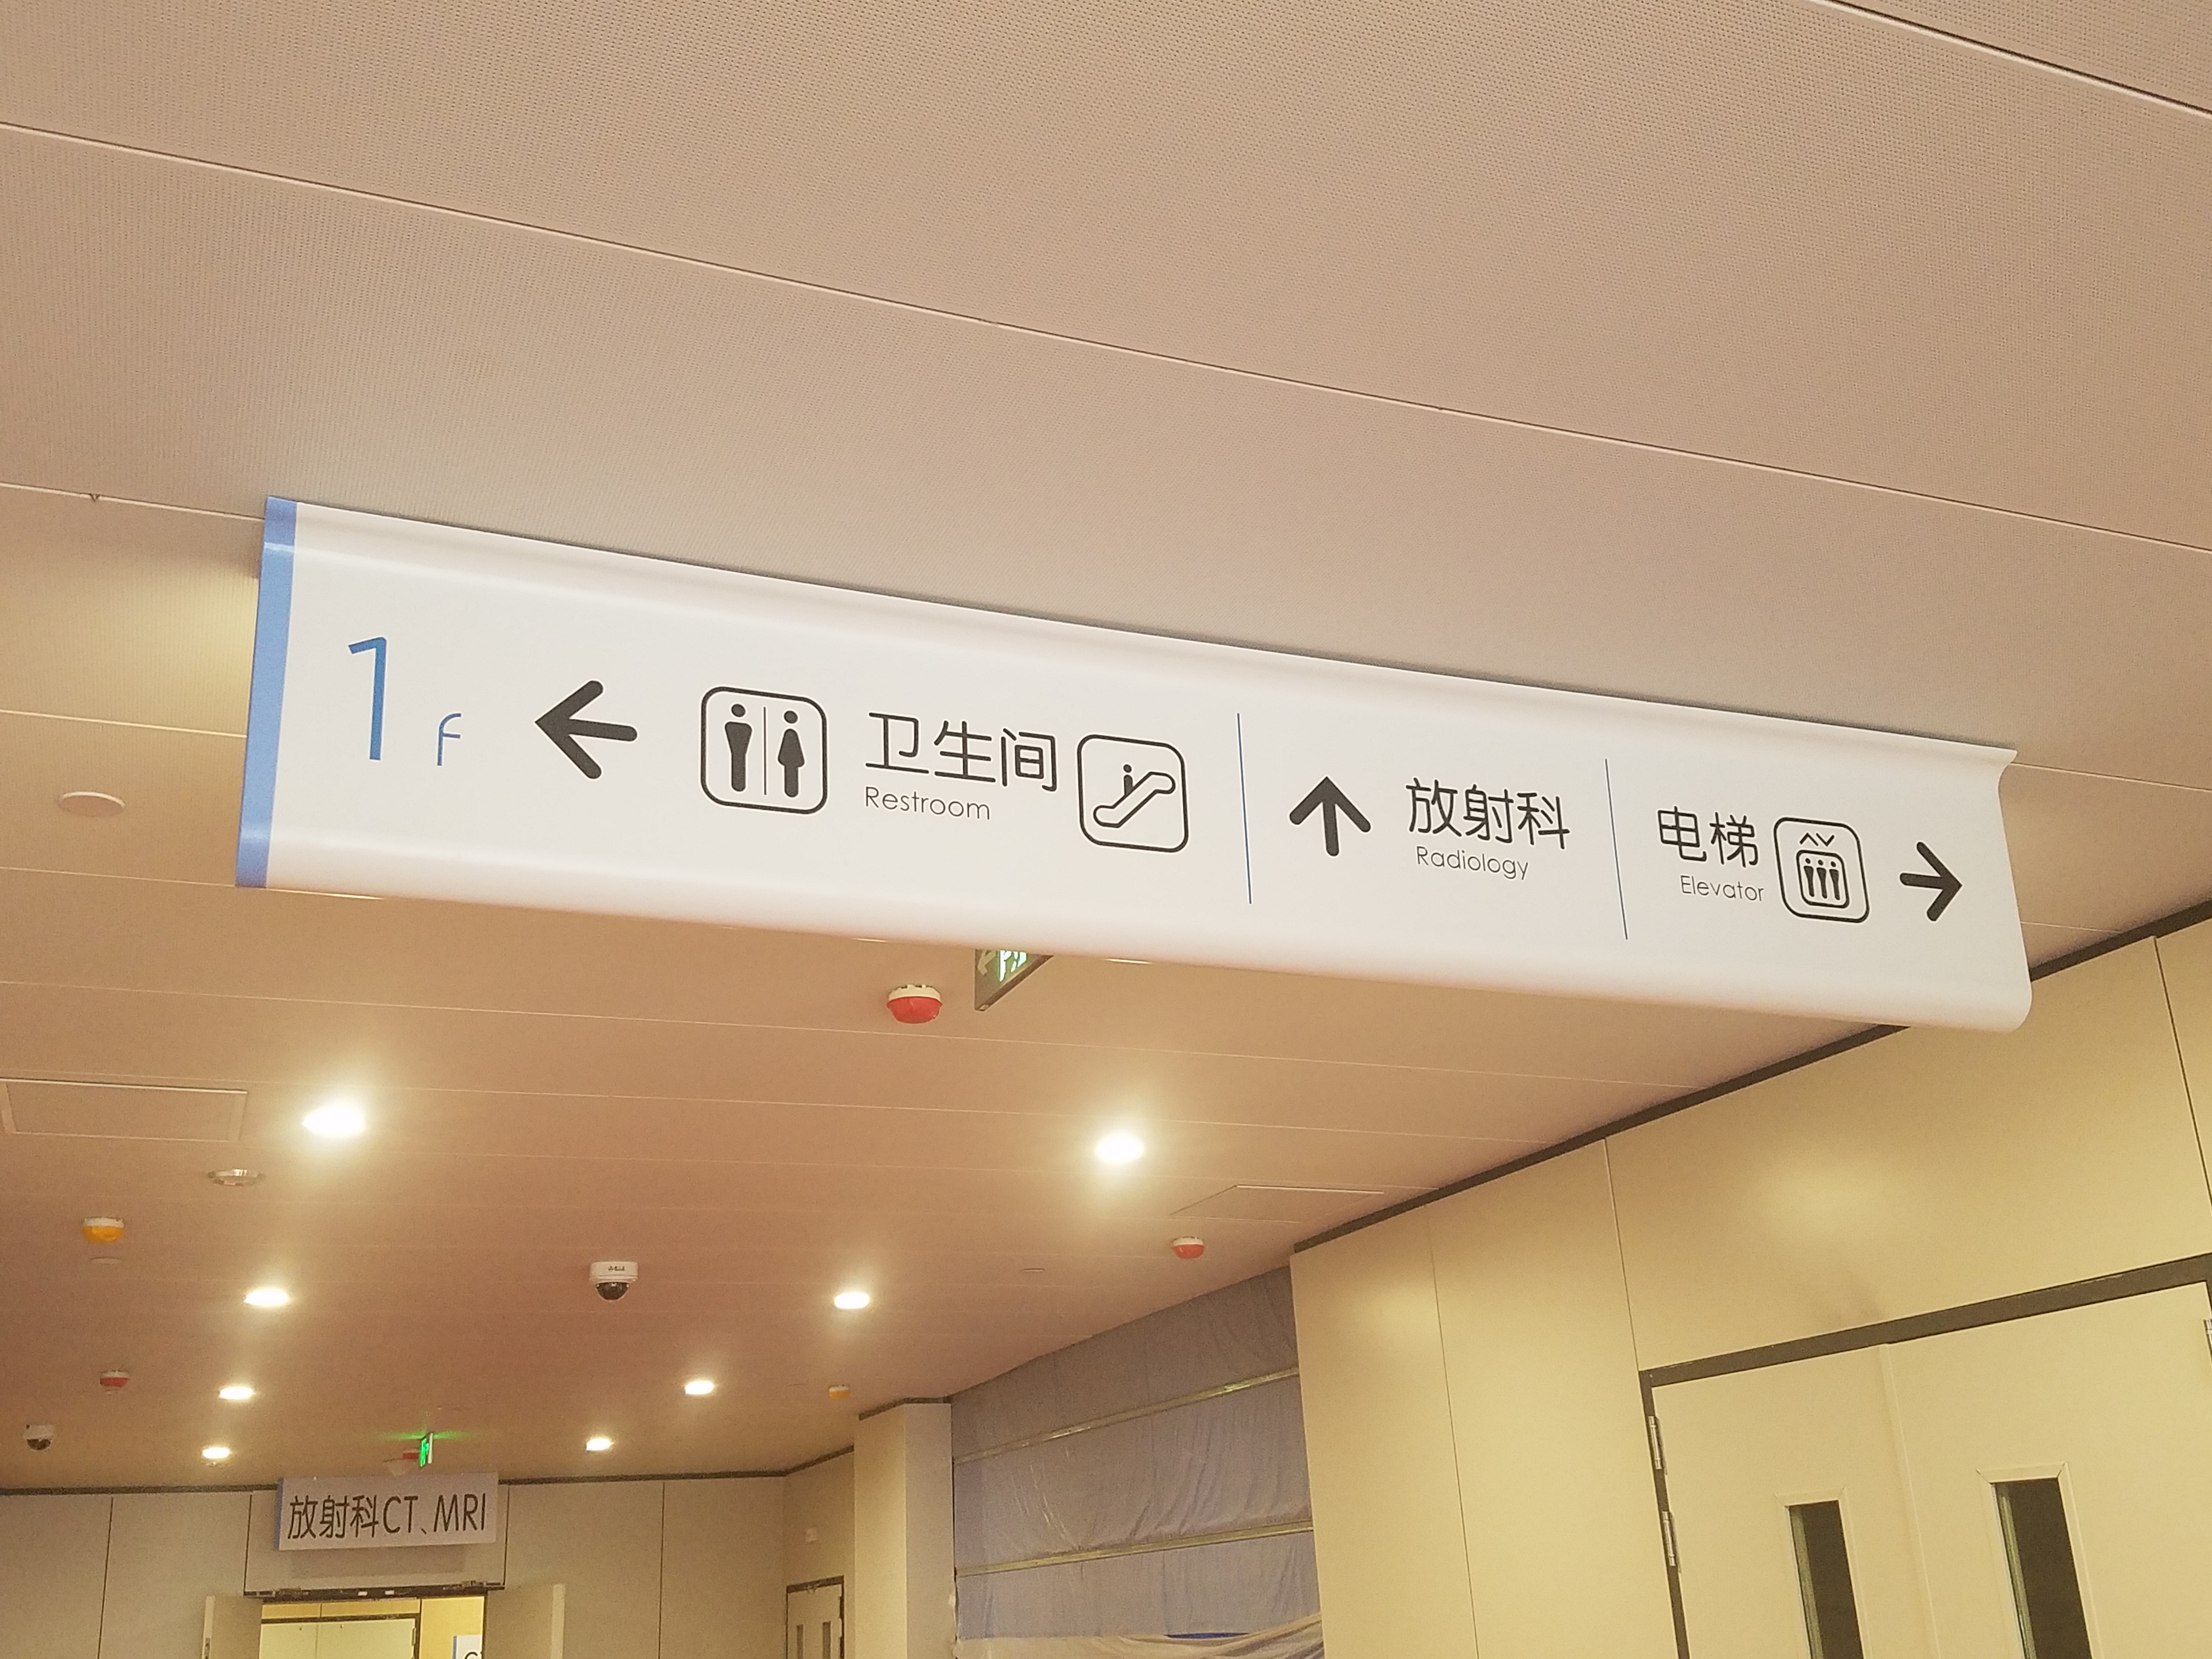 [醫院標識設計]江蘇省人民醫院標識導視系統建設項目